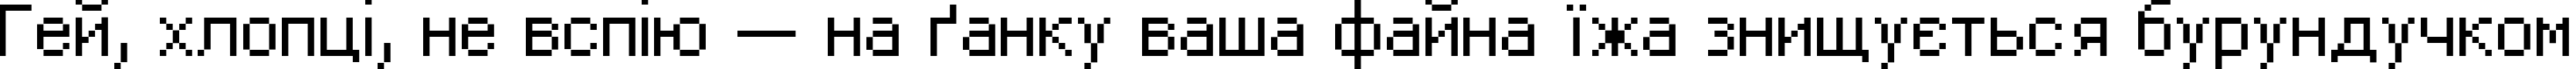 Пример написания шрифтом DPix_8pt текста на украинском